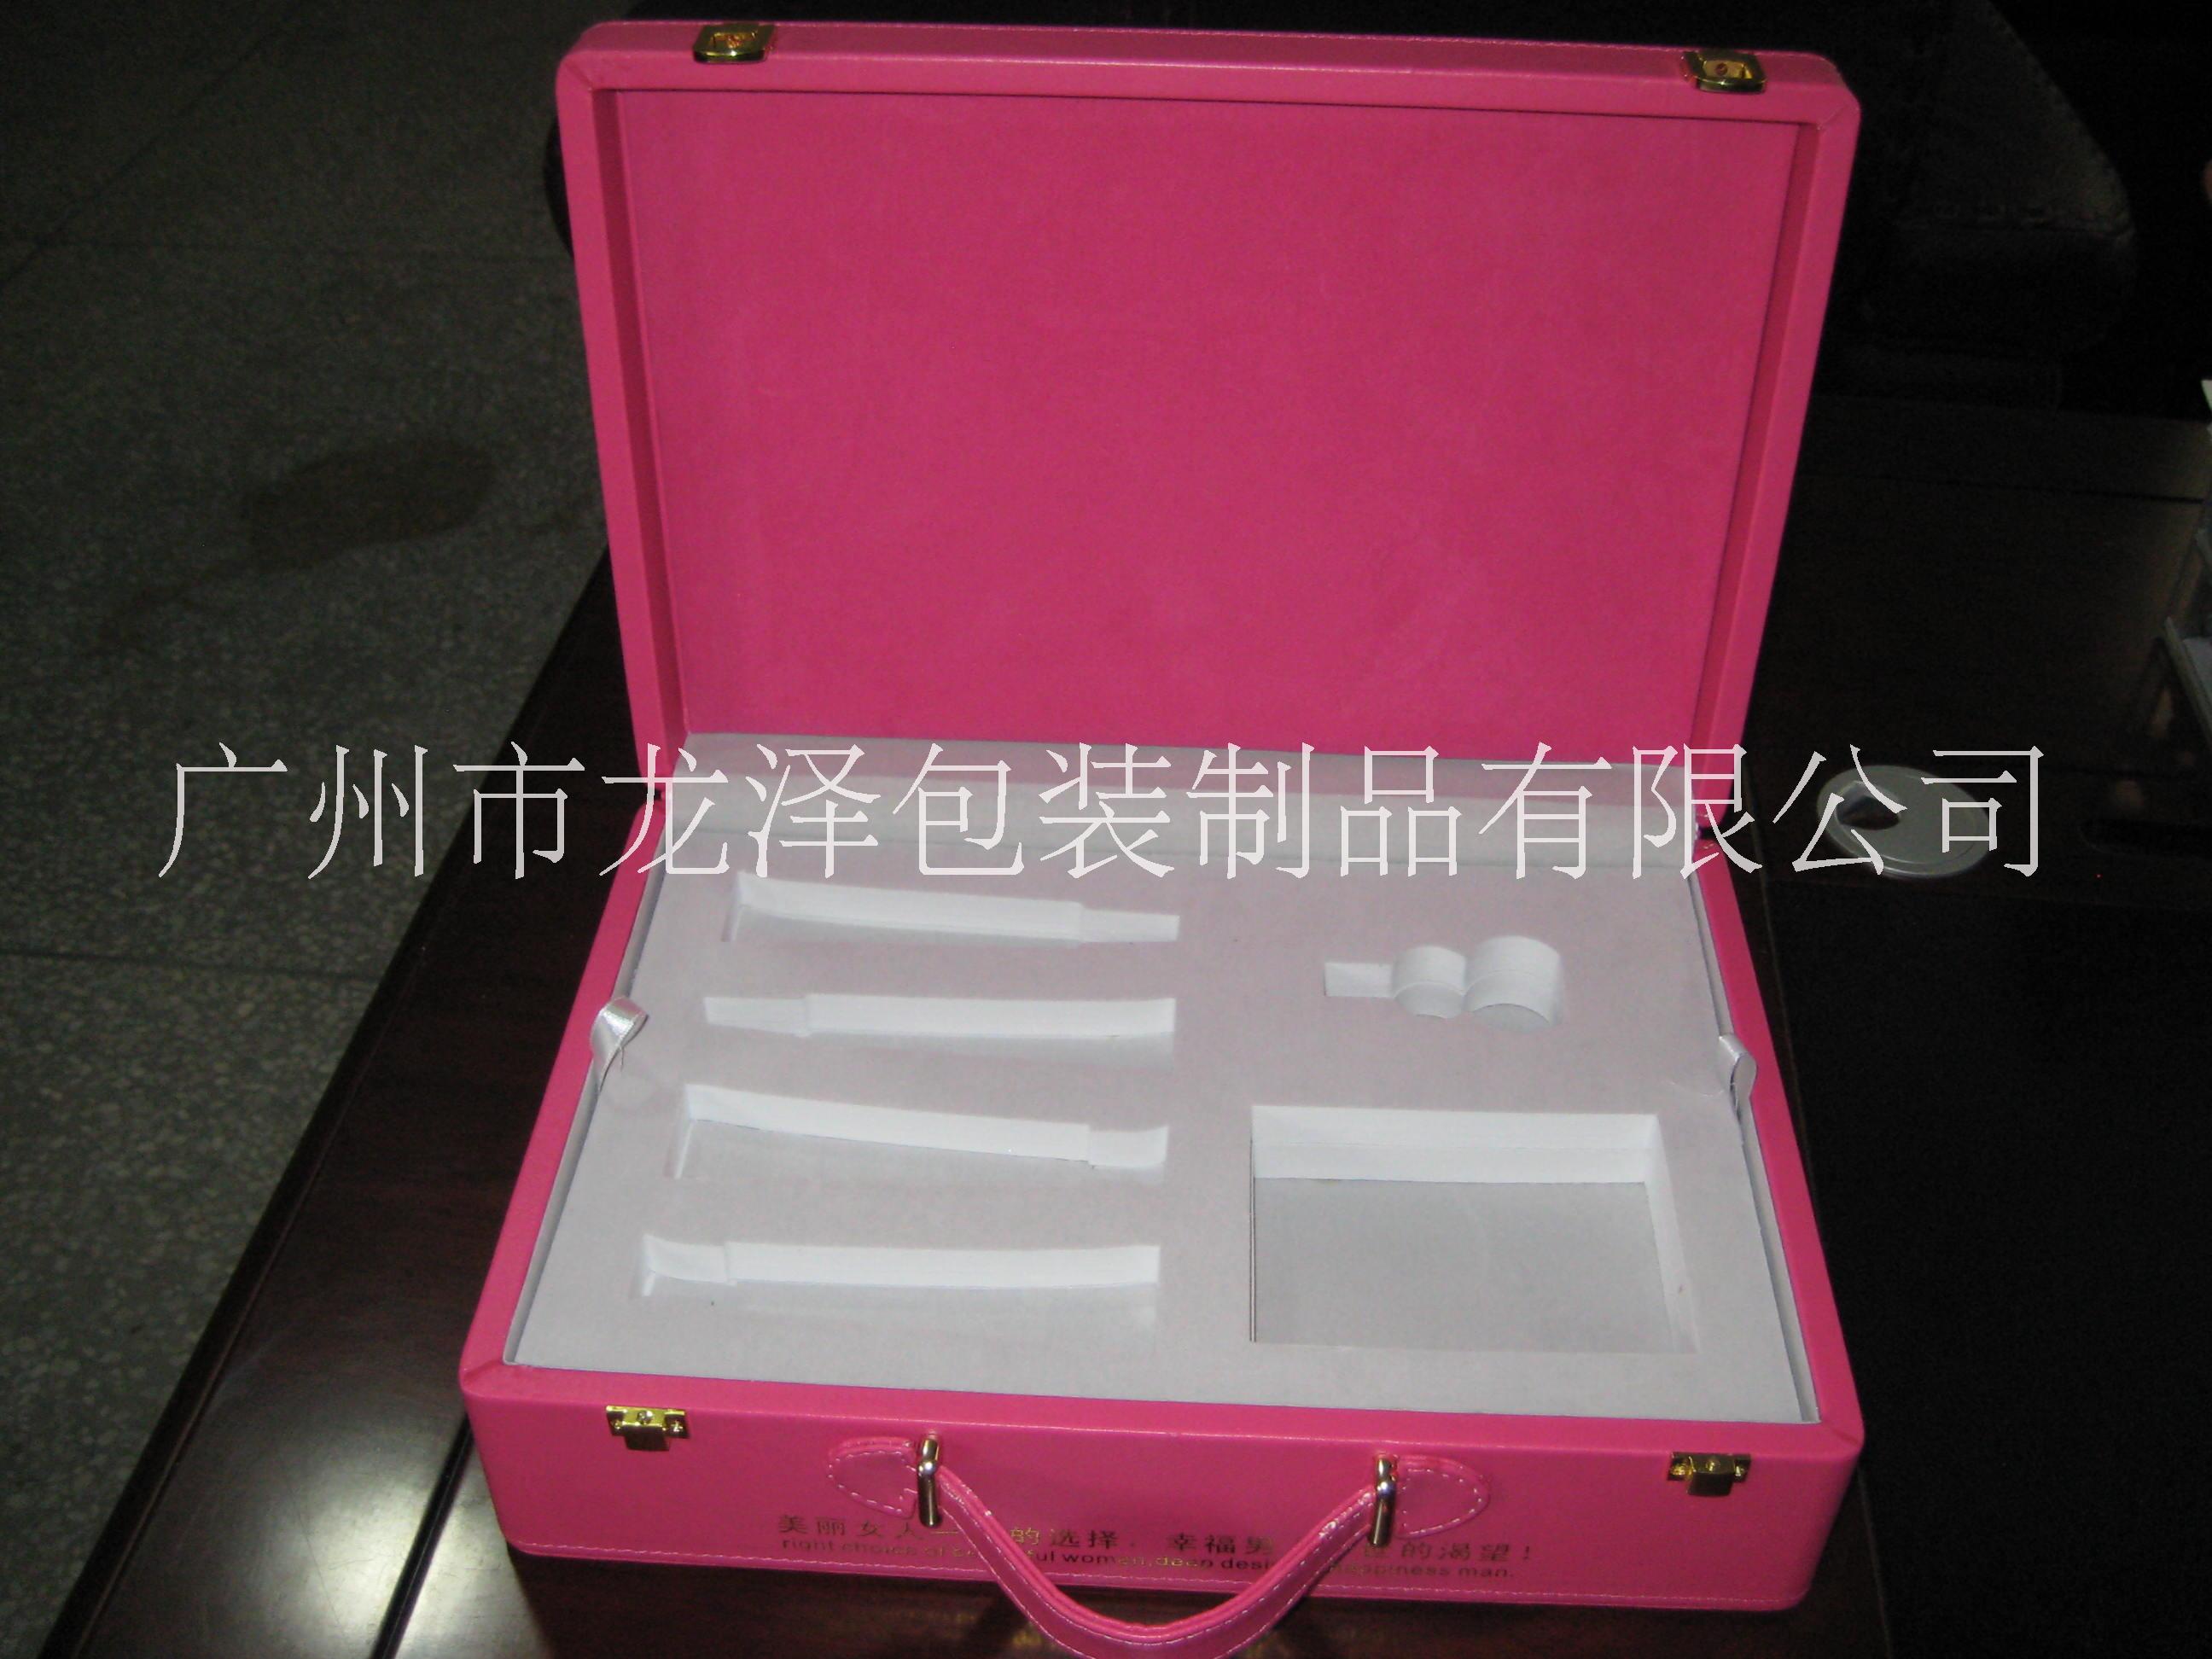 化妆品盒 广州厂家直销化妆品盒 广州厂家直销超雅高档化妆品盒